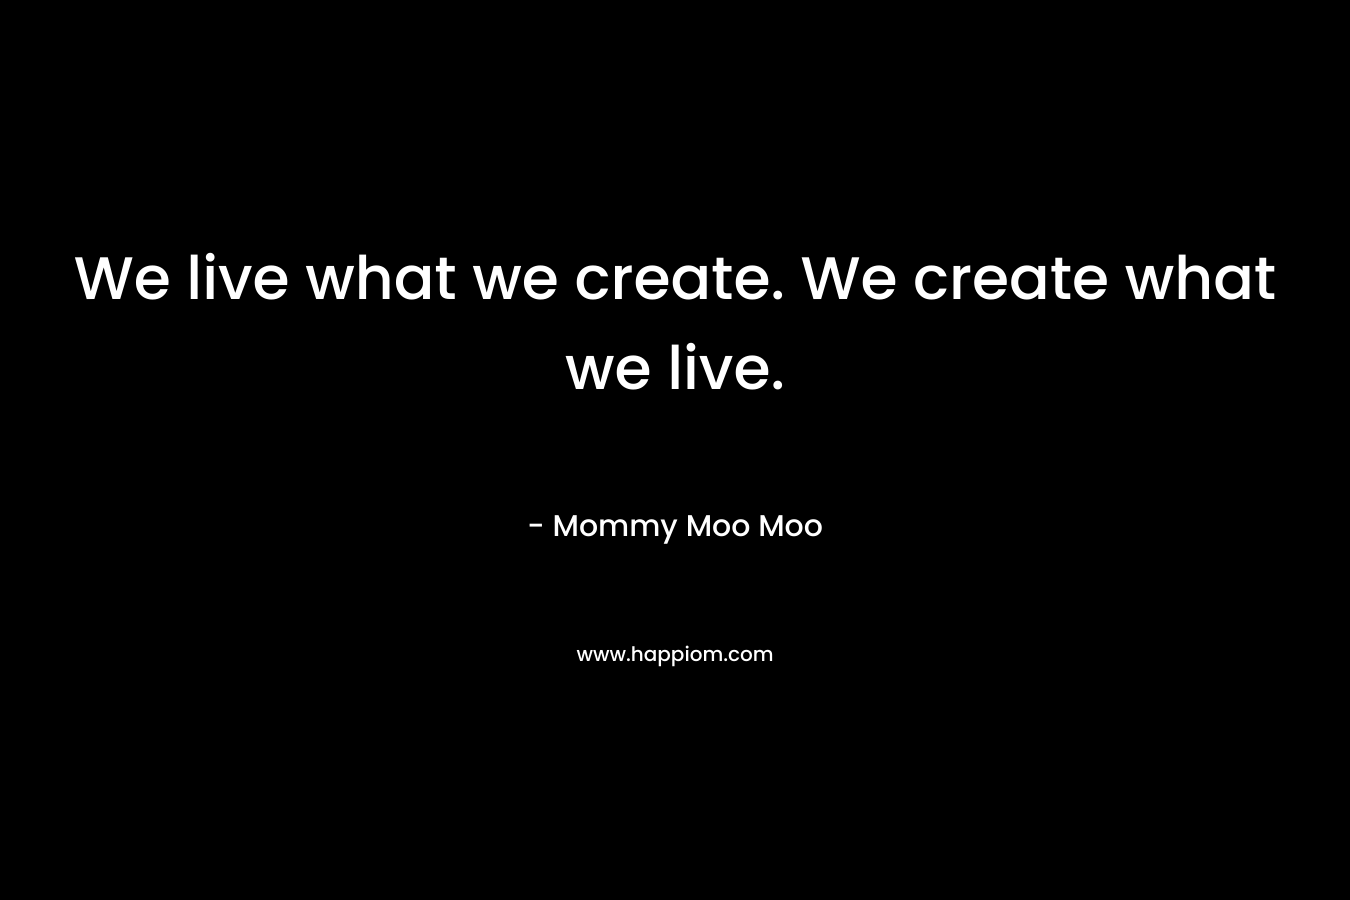 We live what we create. We create what we live.